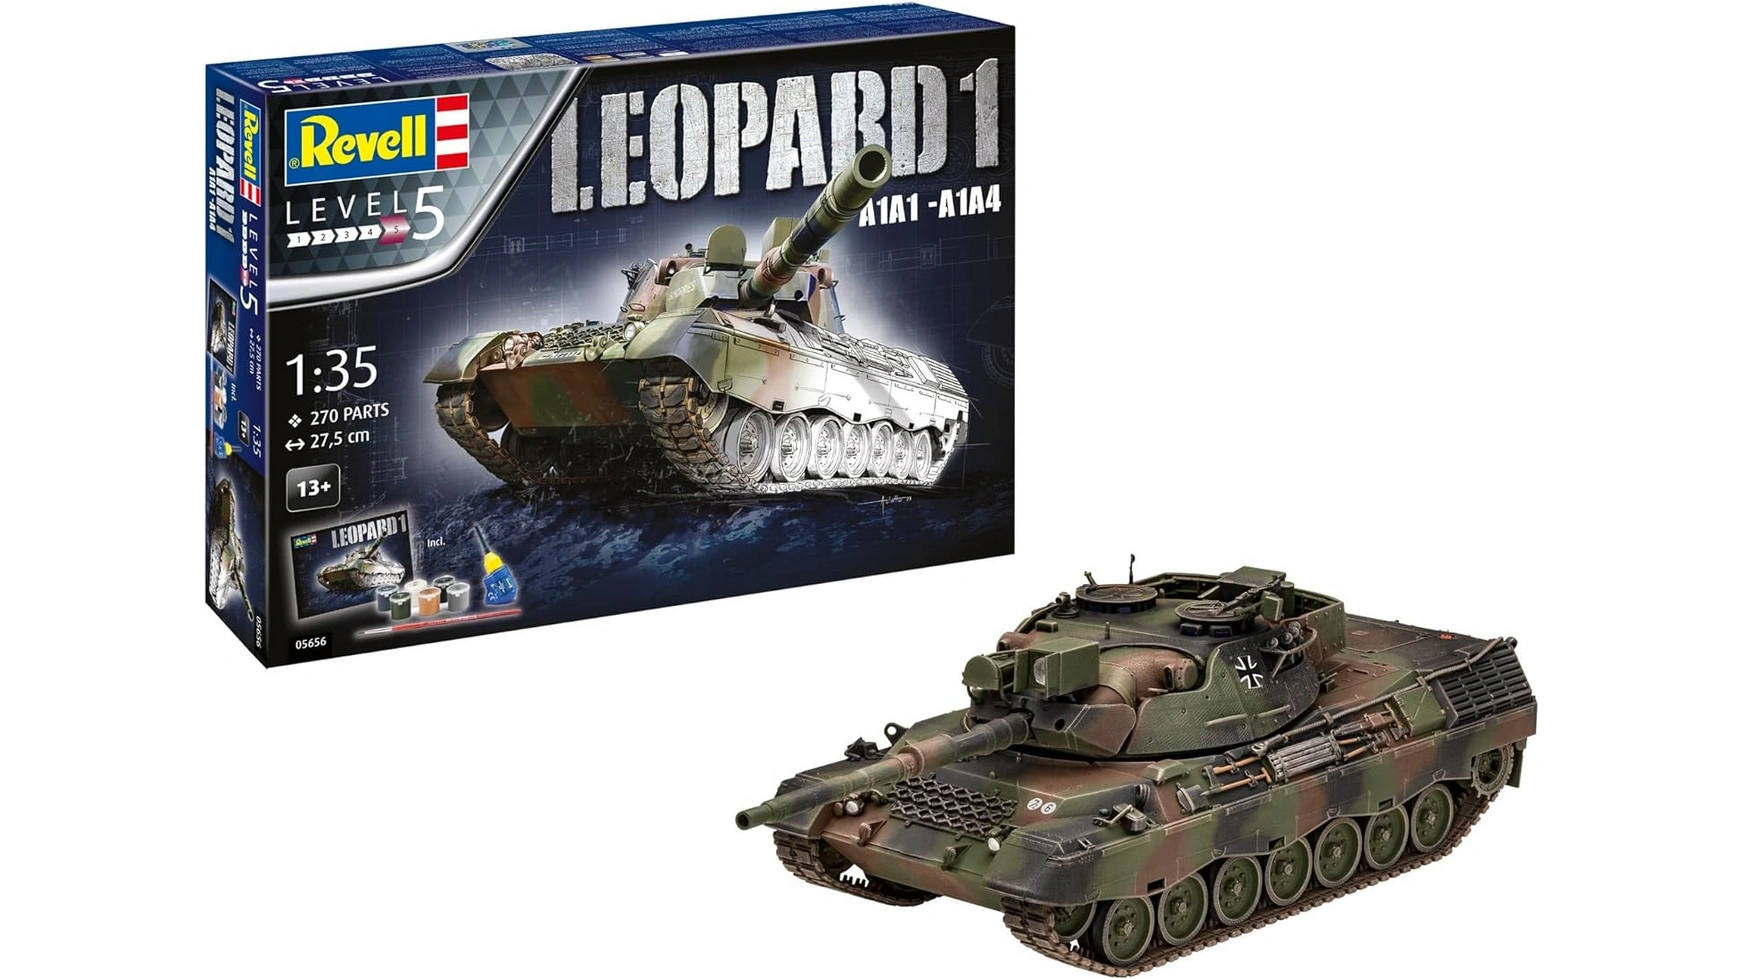 Подарочный набор Revell Леопард 1 A1A1-A1A4 ларин андрей алексеевич танки второй мировой войны